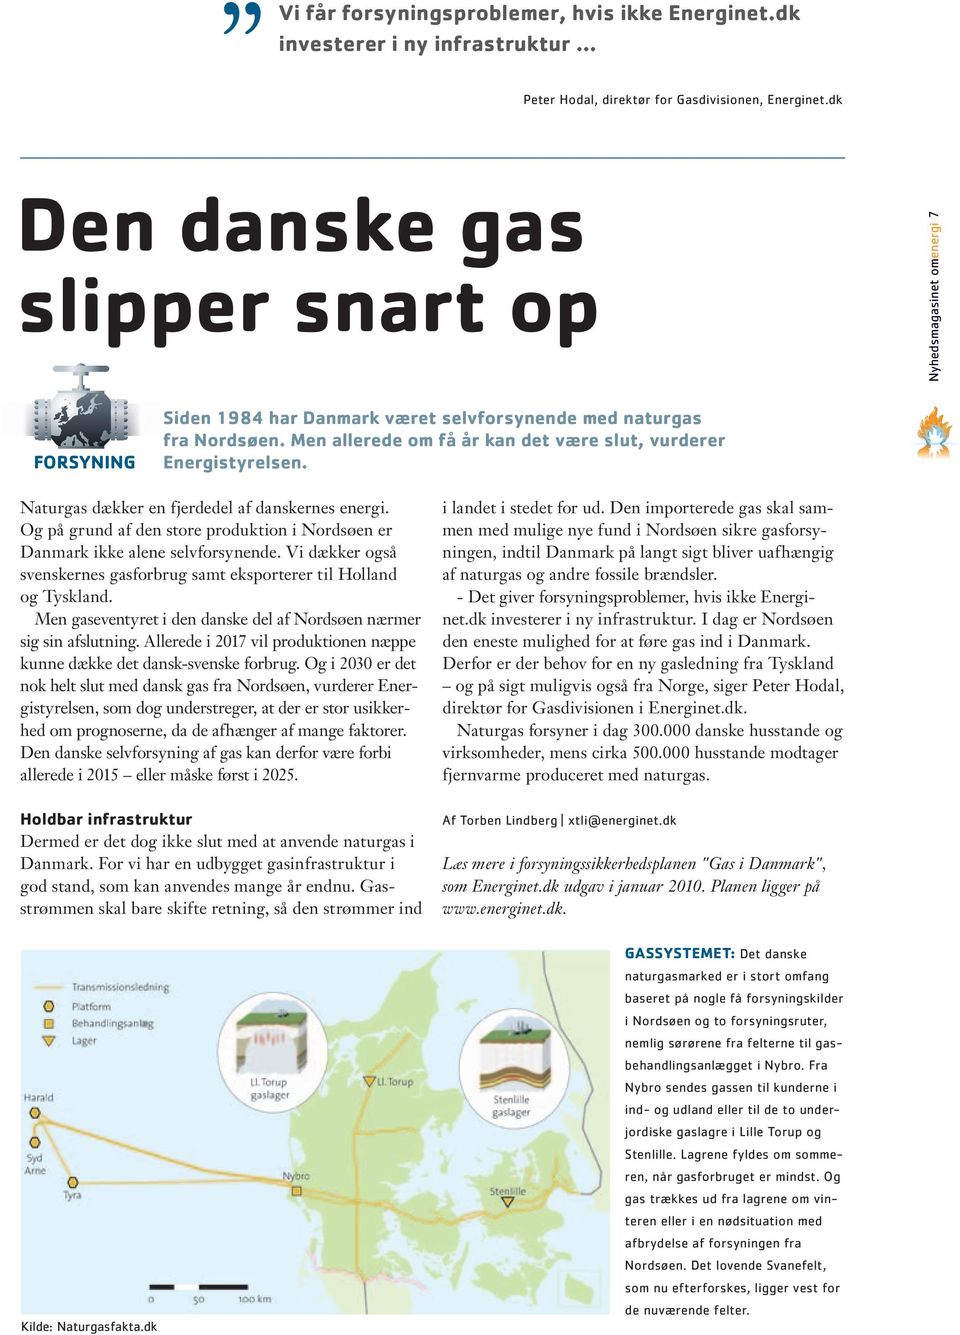 Men allerede om få år kan det være slut, vurderer Energistyrelsen. Naturgas dækker en fjerdedel af danskernes energi.